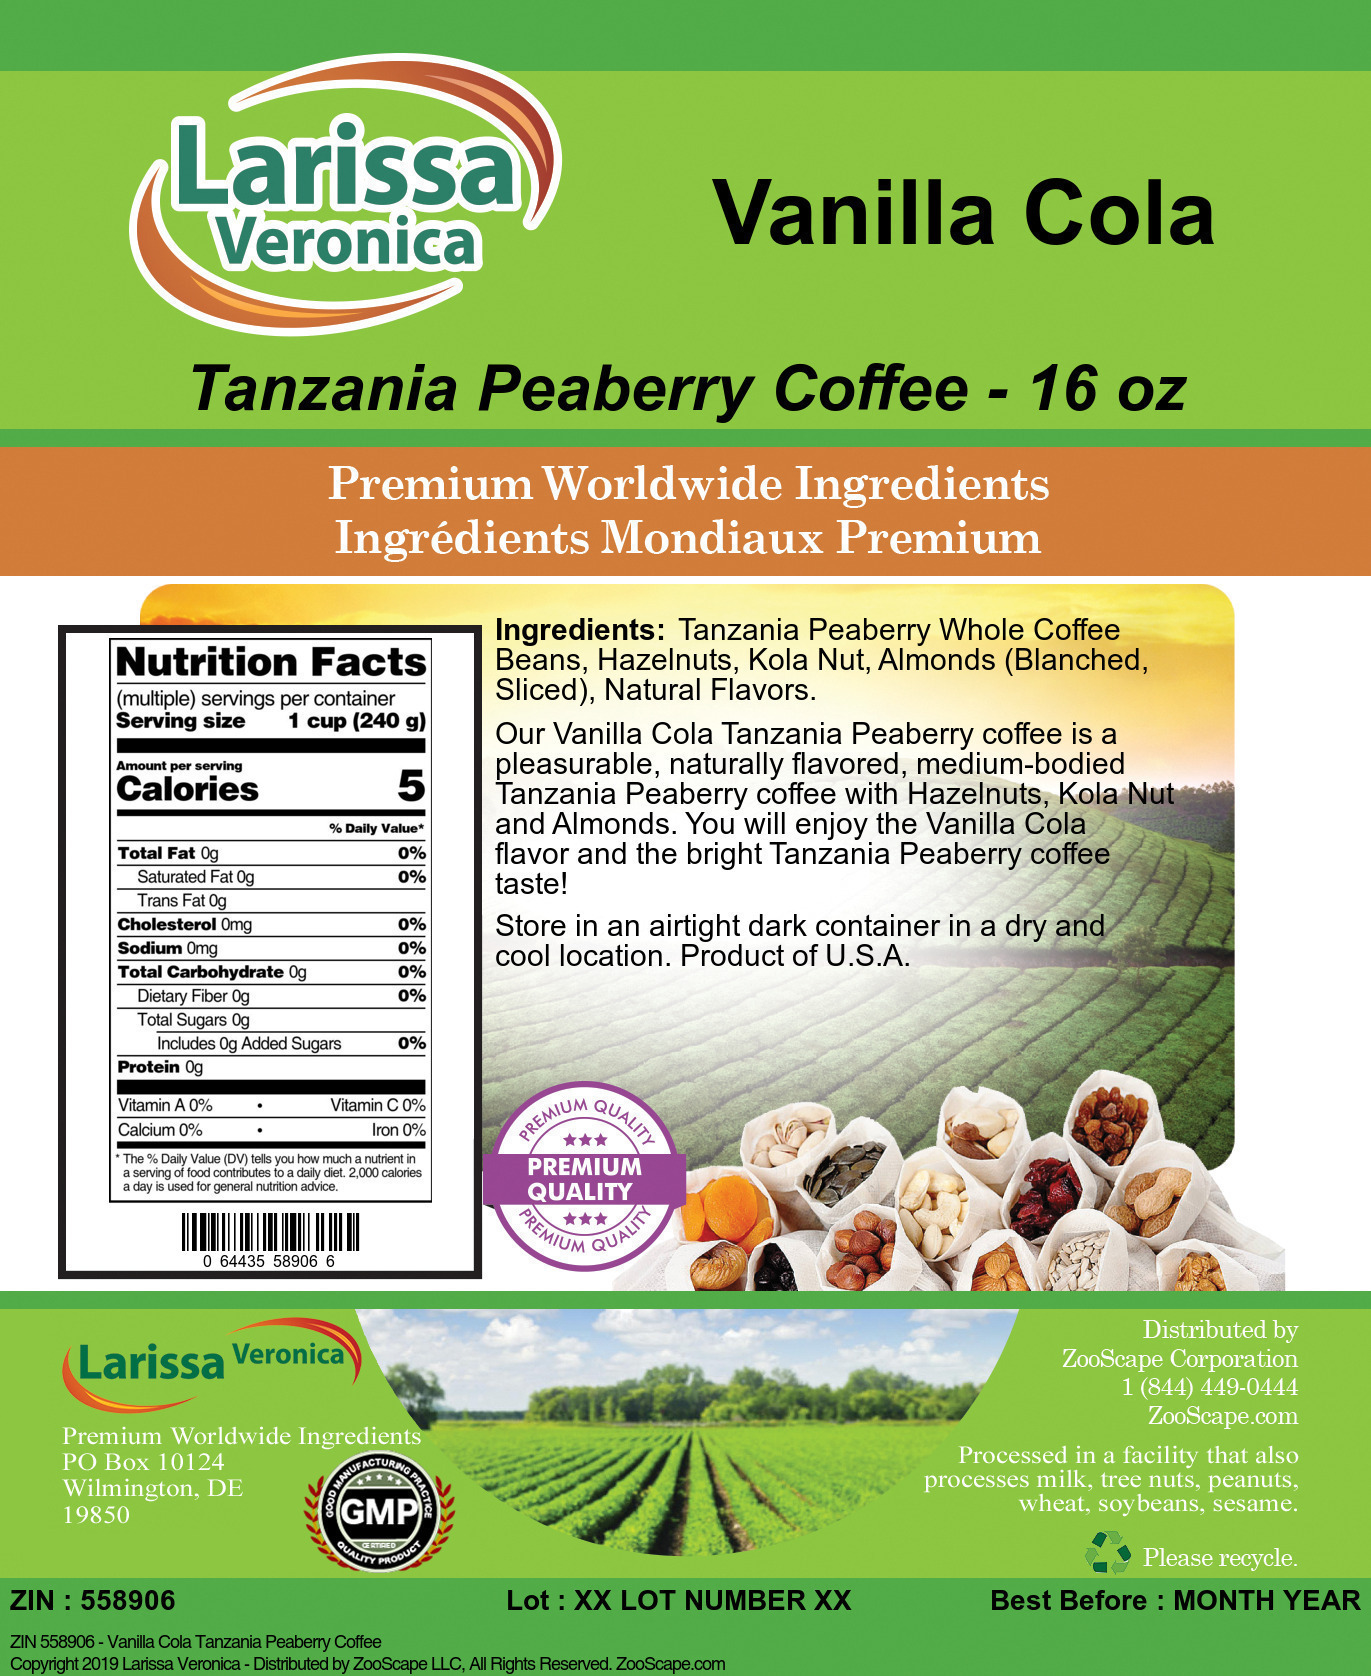 Vanilla Cola Tanzania Peaberry Coffee - Label